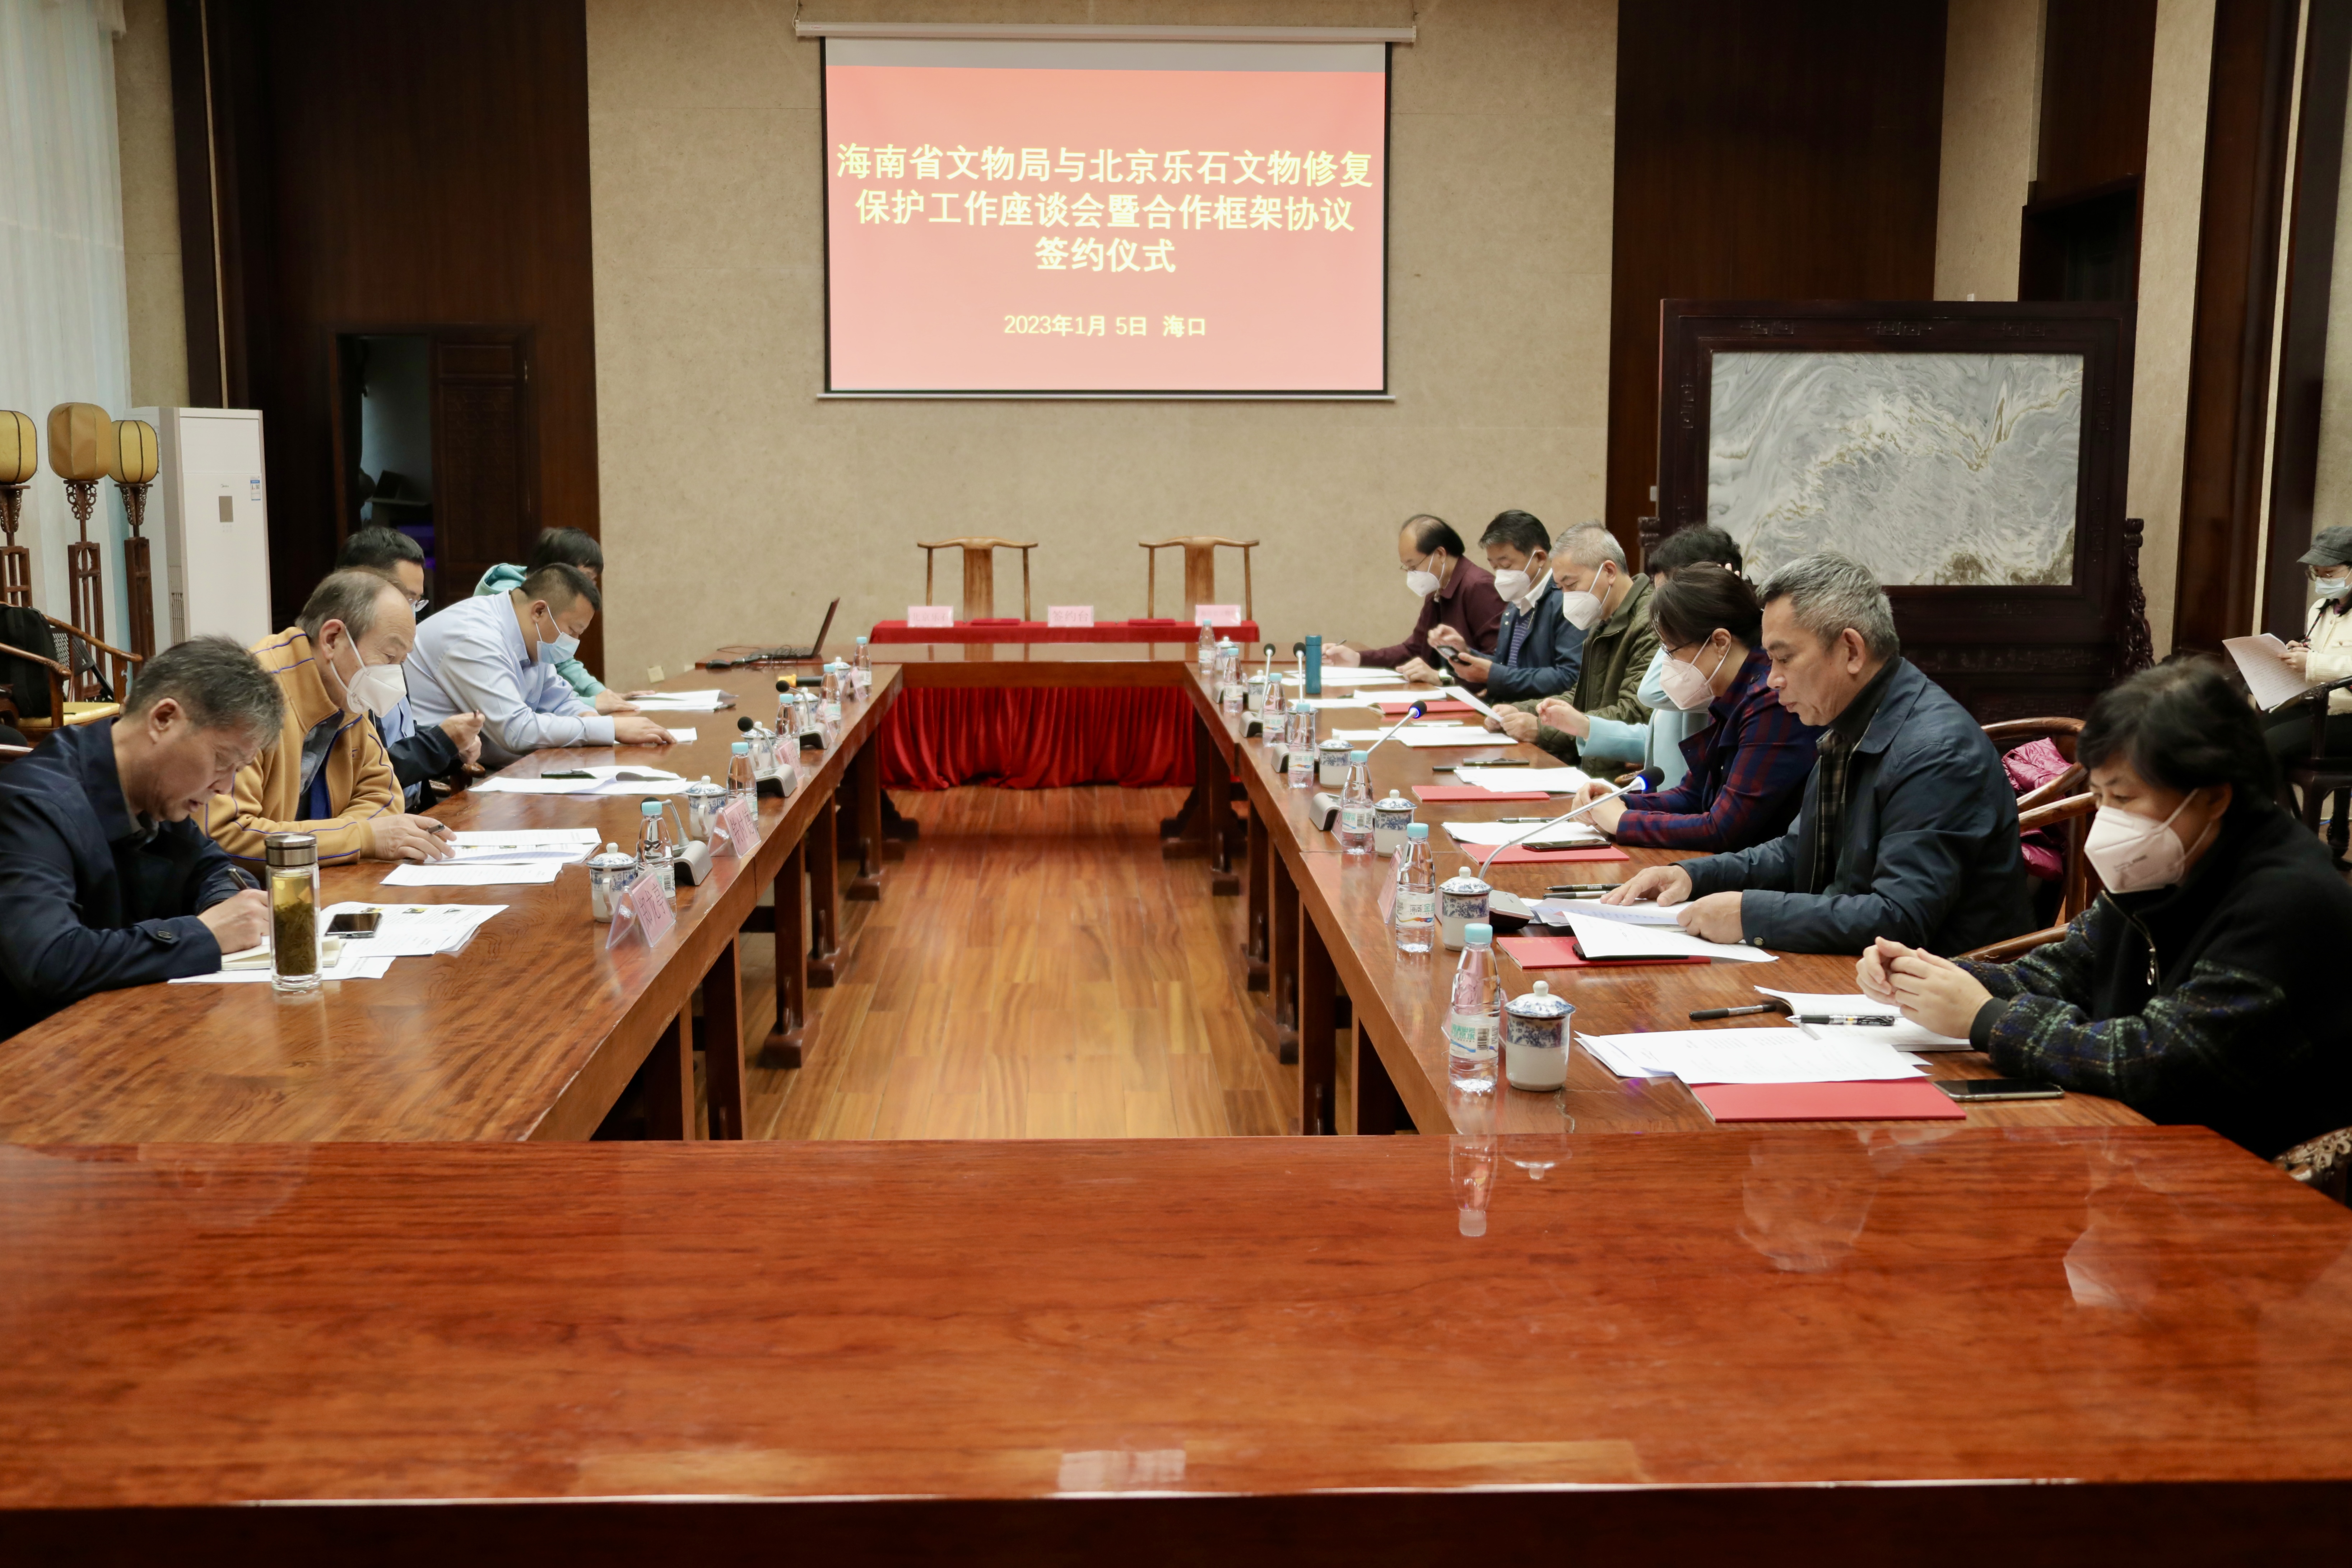 海南省文物局与北京乐石文物修复中心签署合作框架协议 将在文物保护与修复、人才培养等方面开展合作